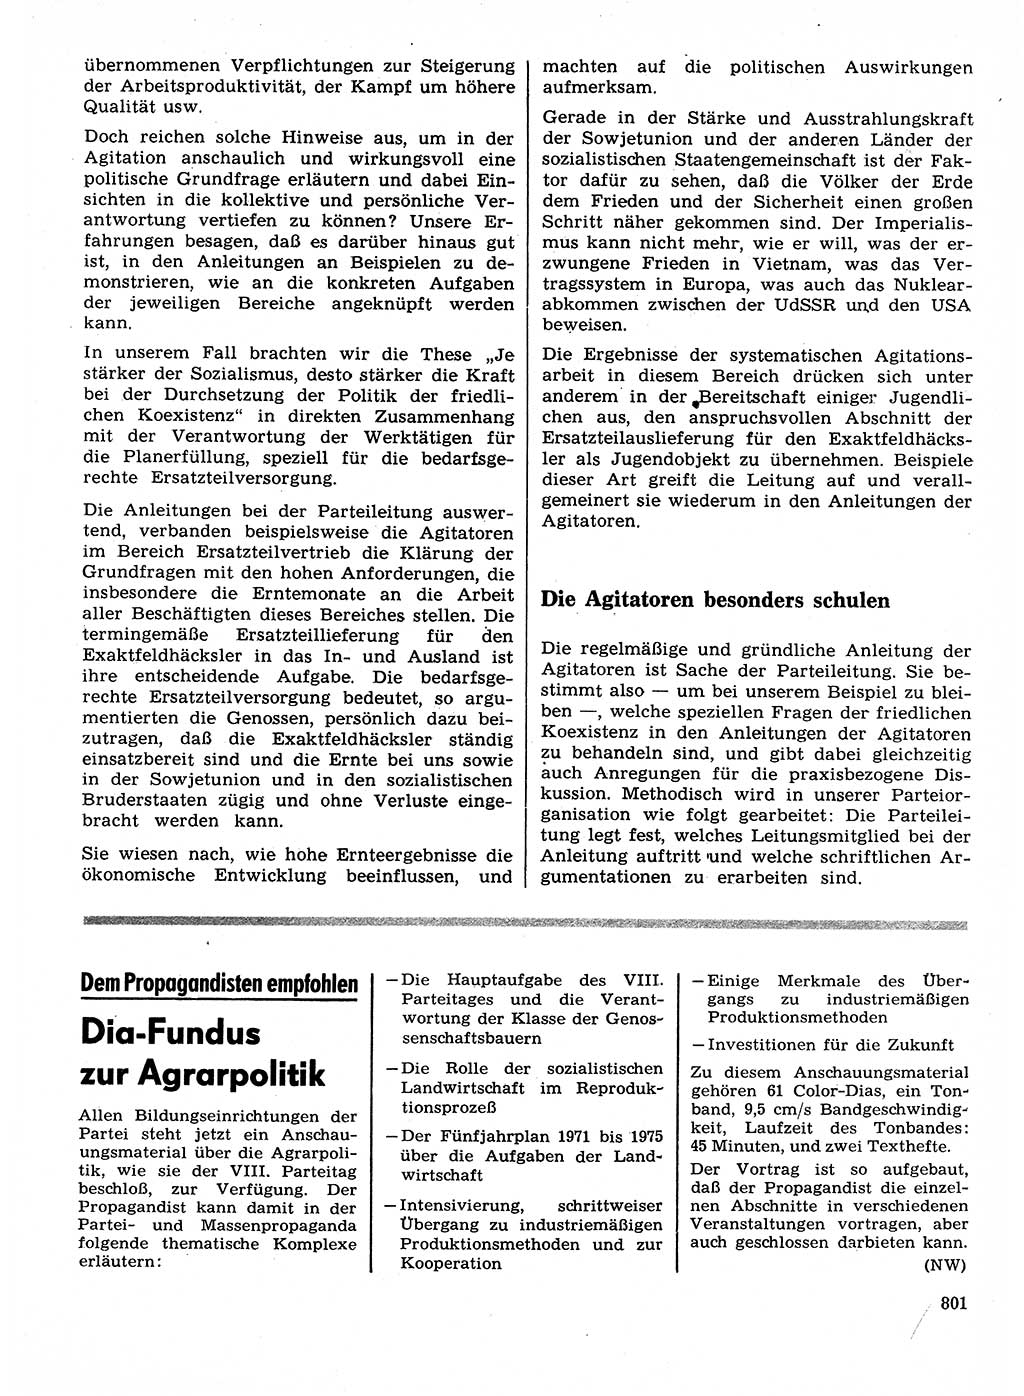 Neuer Weg (NW), Organ des Zentralkomitees (ZK) der SED (Sozialistische Einheitspartei Deutschlands) für Fragen des Parteilebens, 28. Jahrgang [Deutsche Demokratische Republik (DDR)] 1973, Seite 801 (NW ZK SED DDR 1973, S. 801)